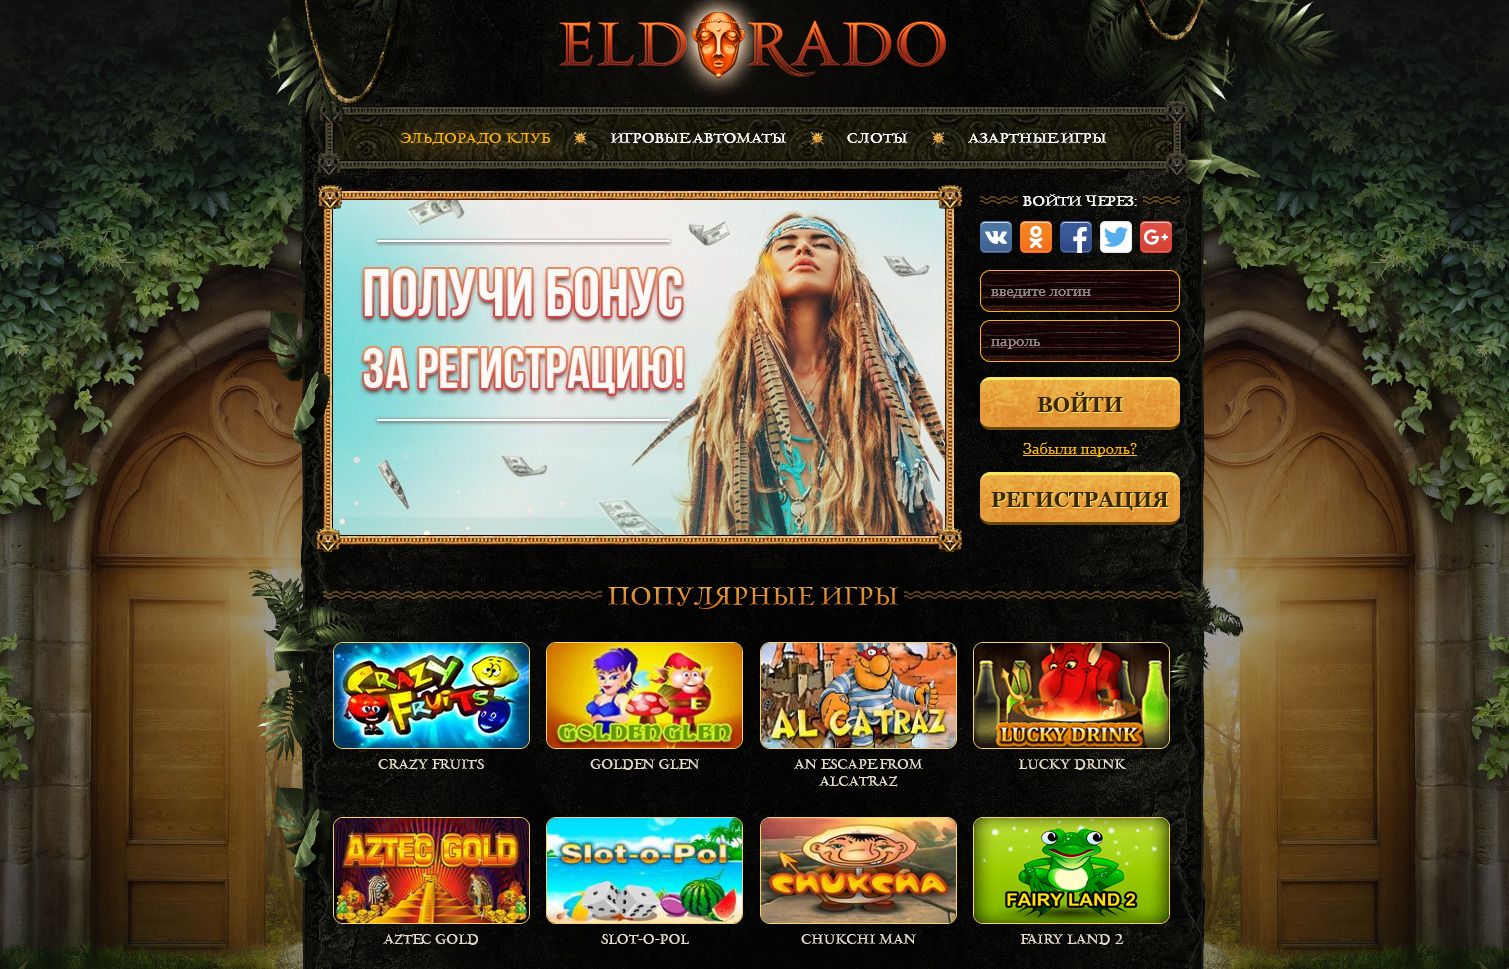 Eldorado casino игровые автоматы online где лучше играть в рулетку на деньги форум